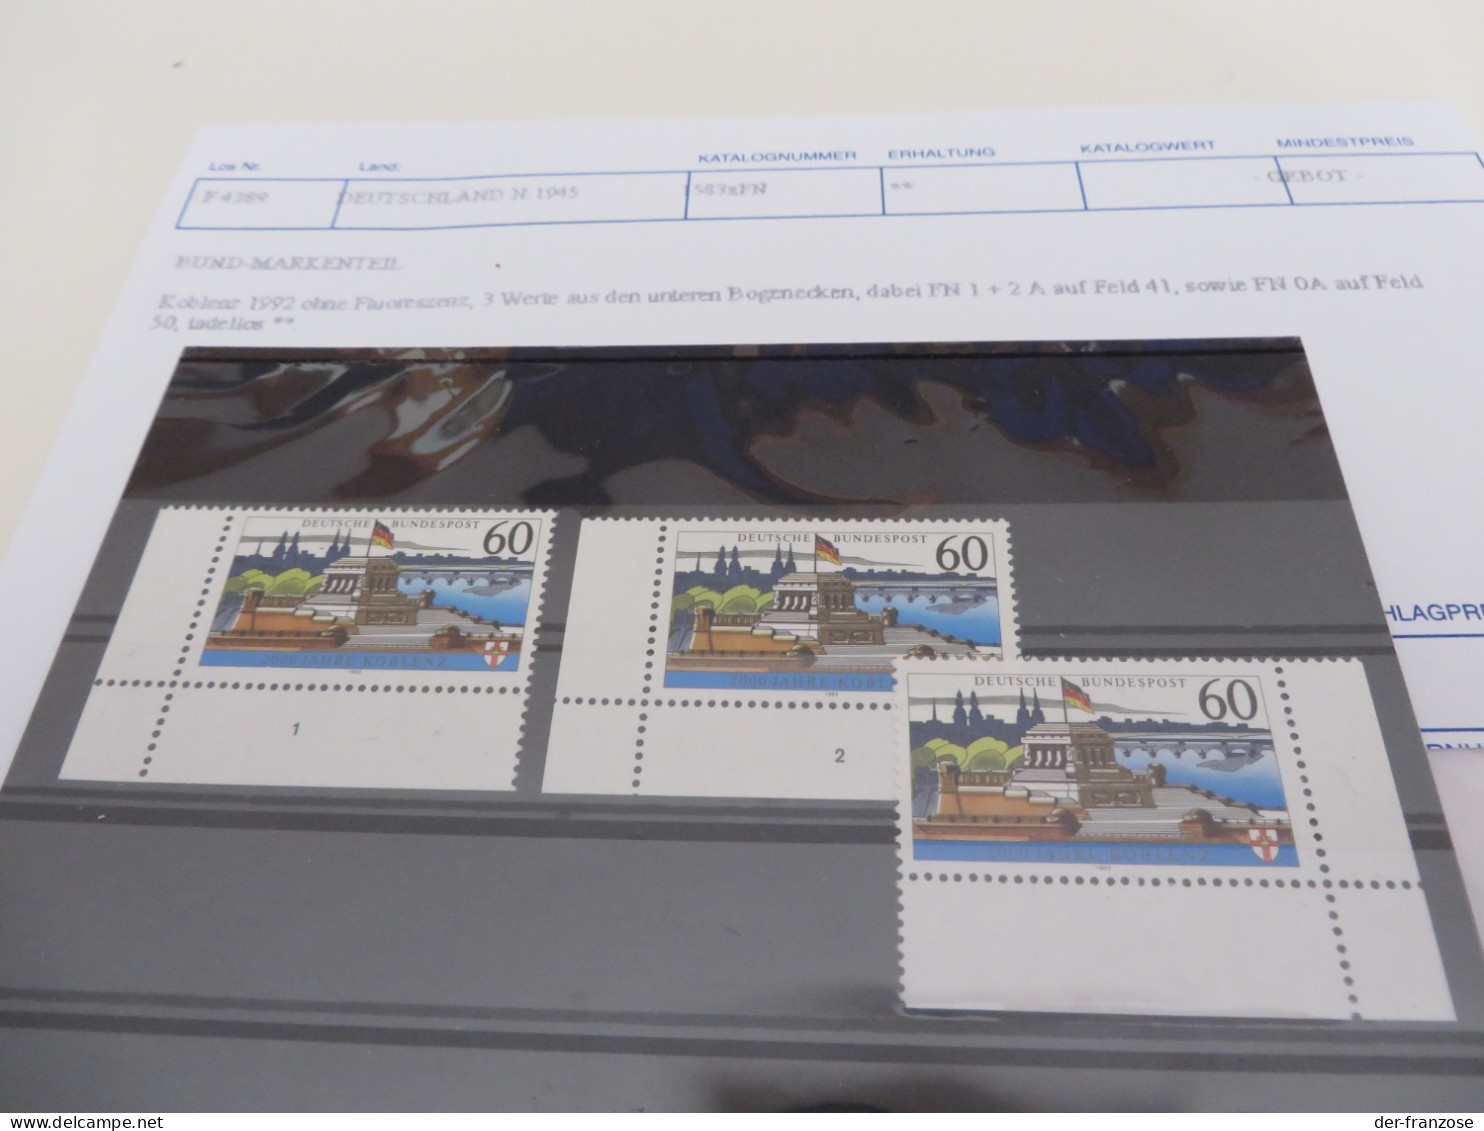 BUND 1992 ** / MARKEN Ohne Fluoreszenz.,3 WERTE BOGENECKEN FN 1 +2 A AUF FELD 41 FN 0A Auf 1-6 F 50 - Unused Stamps